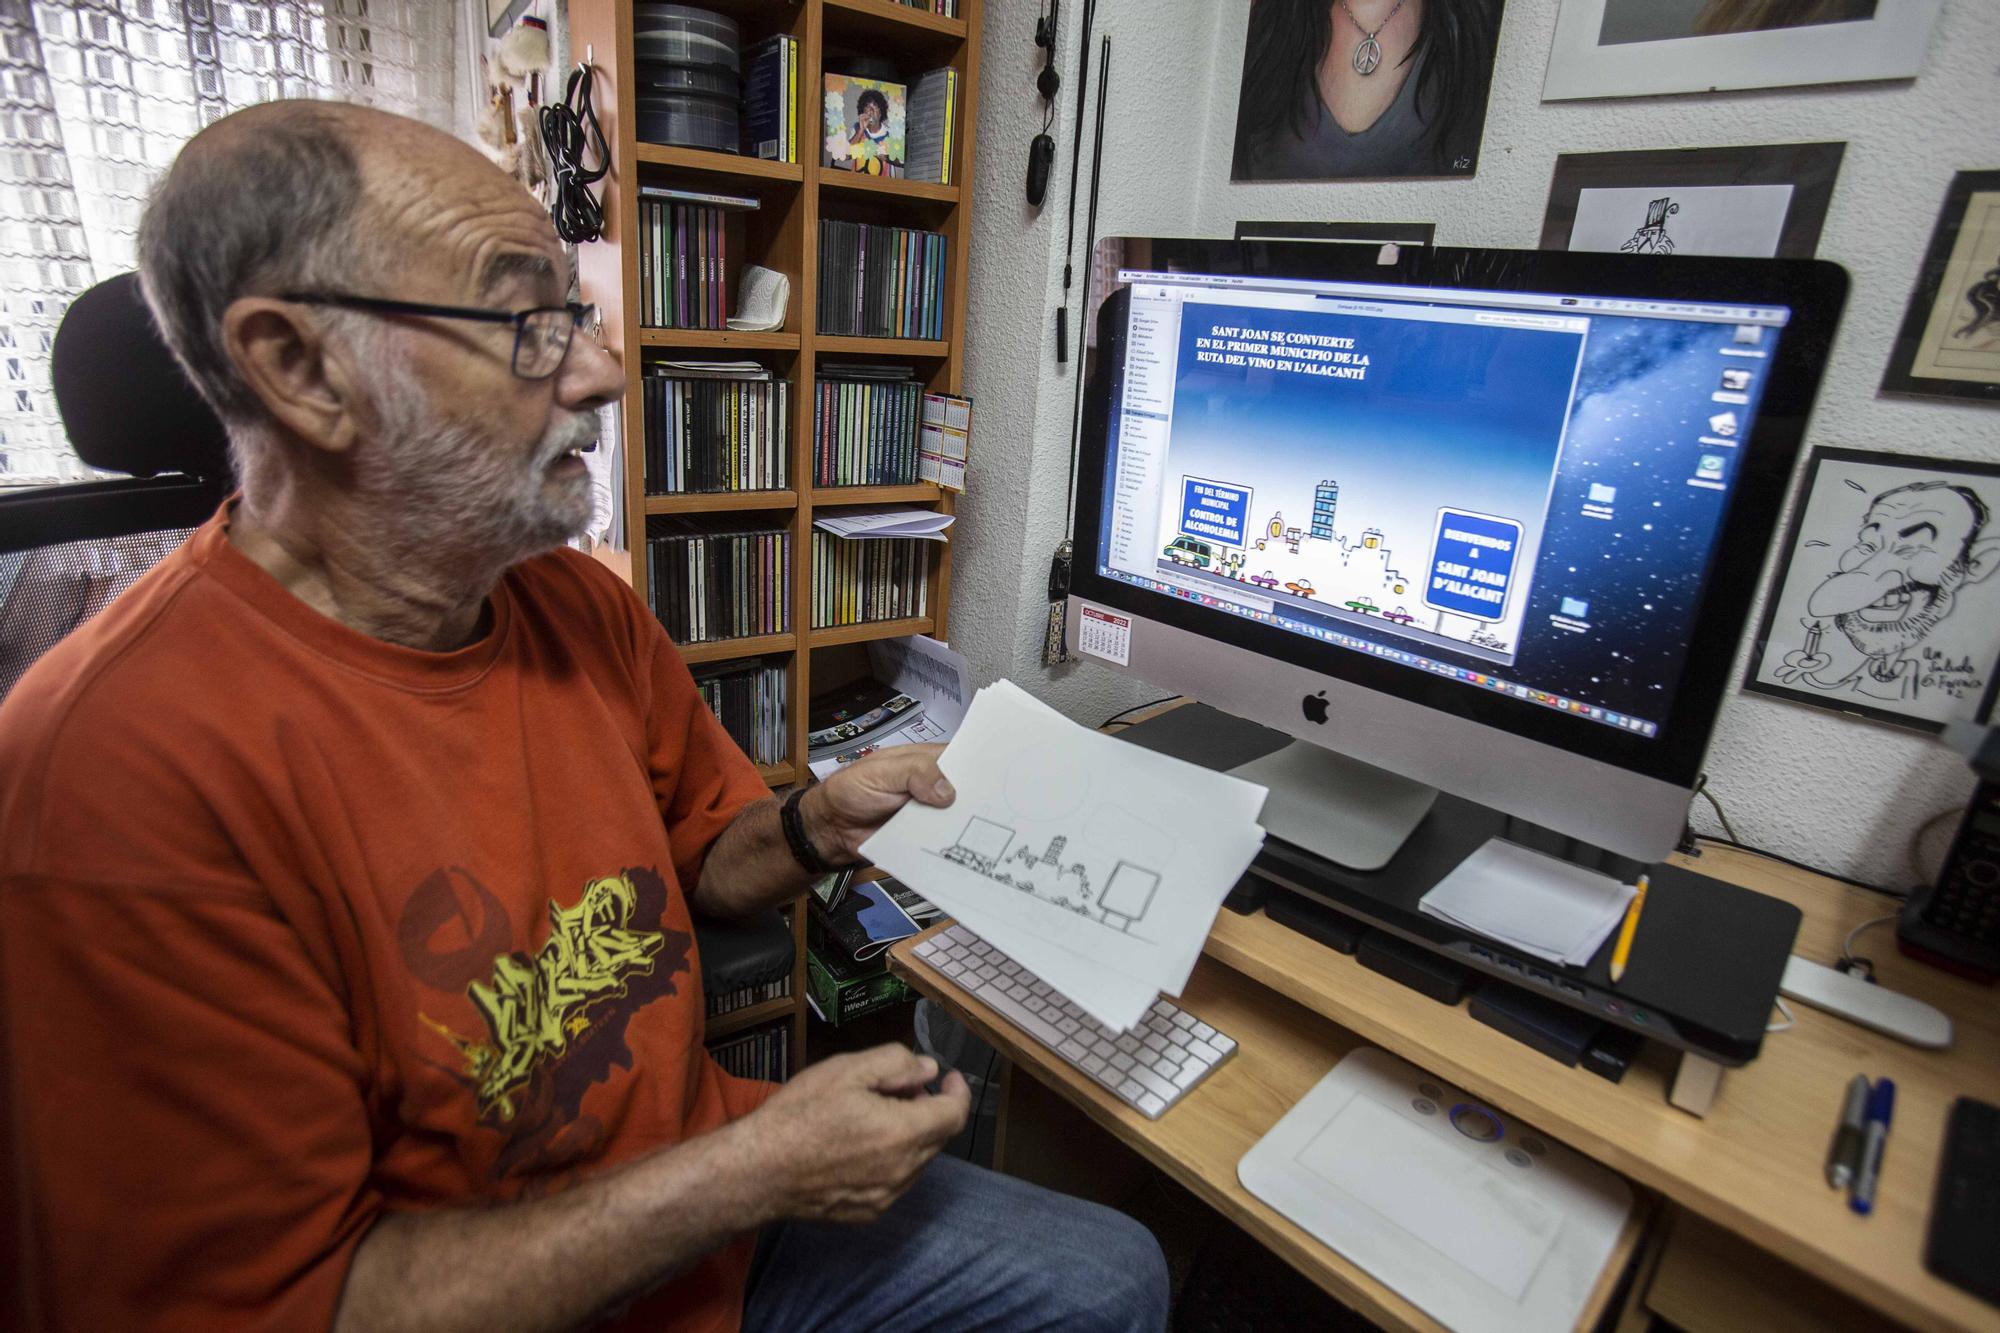 50 años de Enrique como dibujante del Diario Información